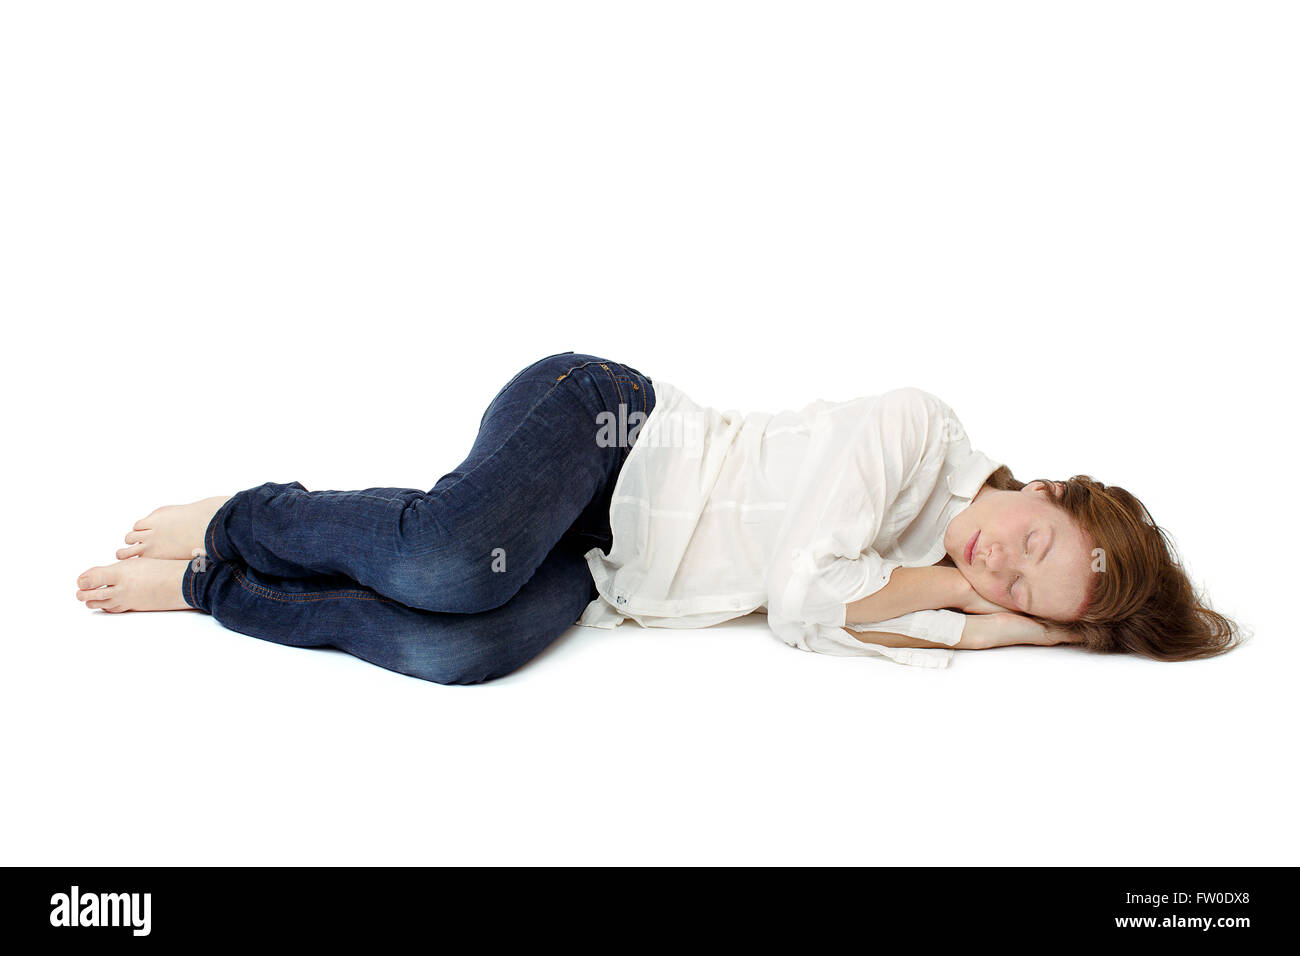 La jeune fille dormir dans ses vêtements sur le sol Banque D'Images